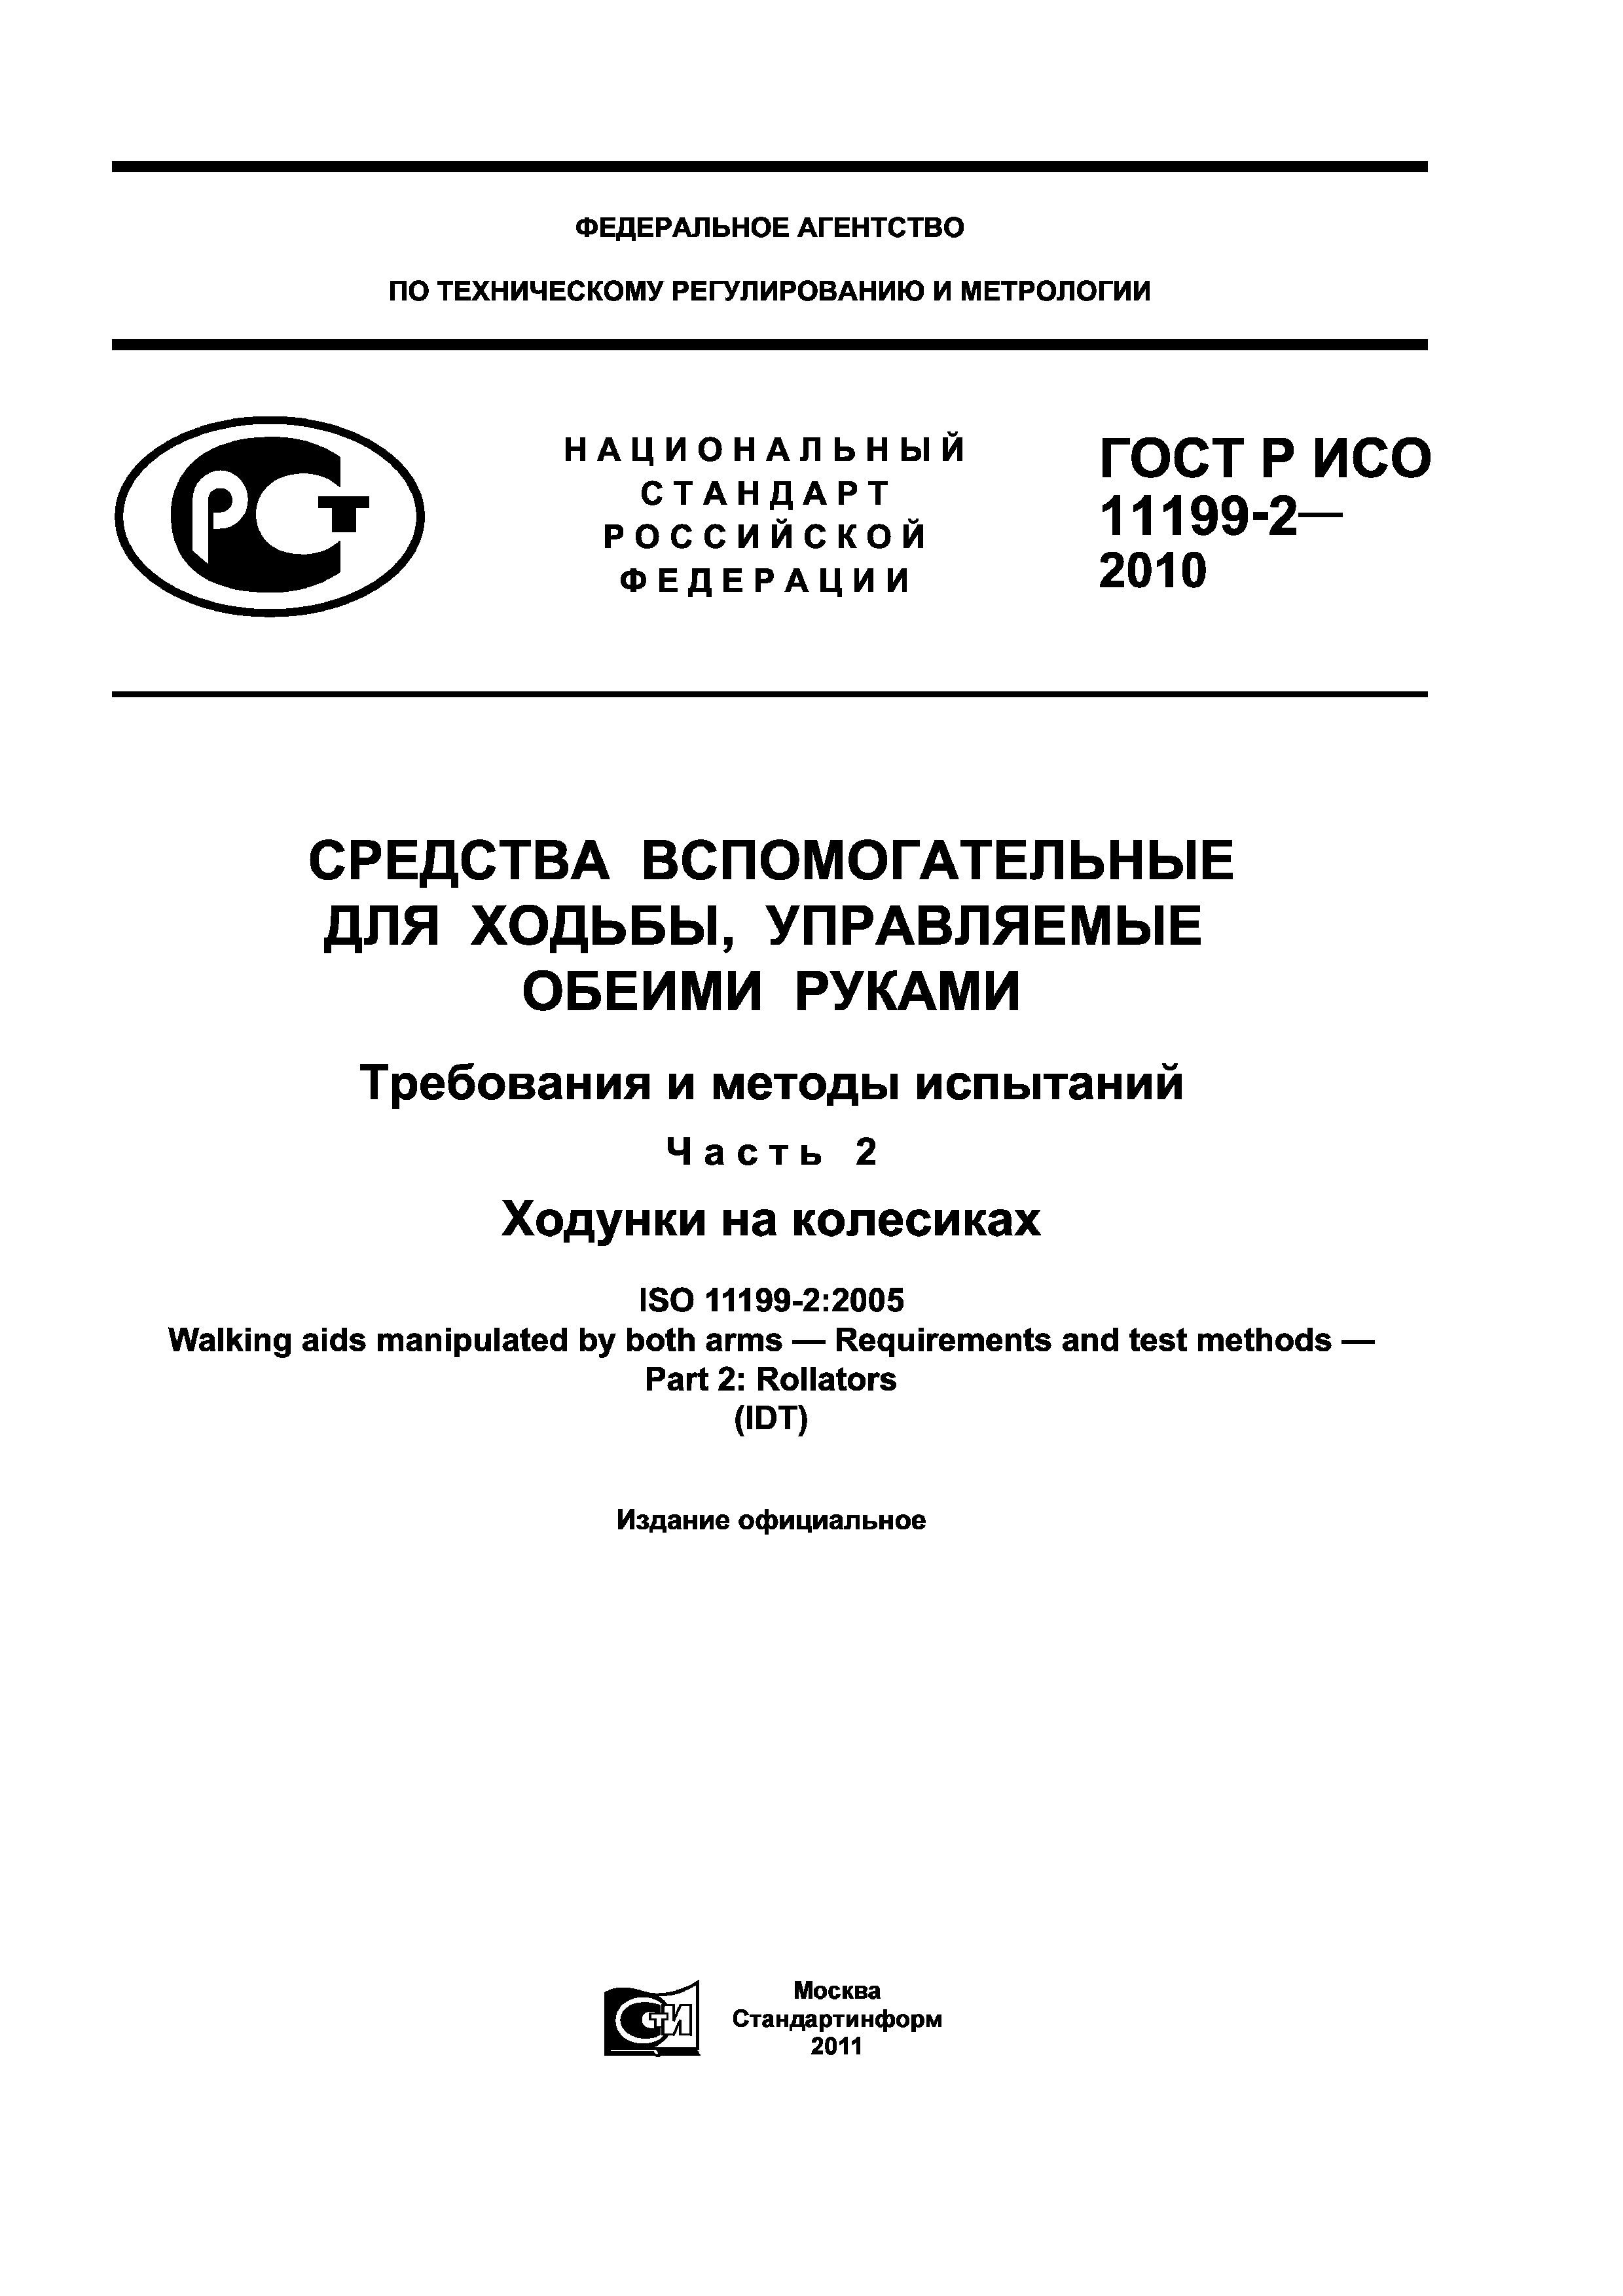 ГОСТ Р ИСО 11199-2-2010